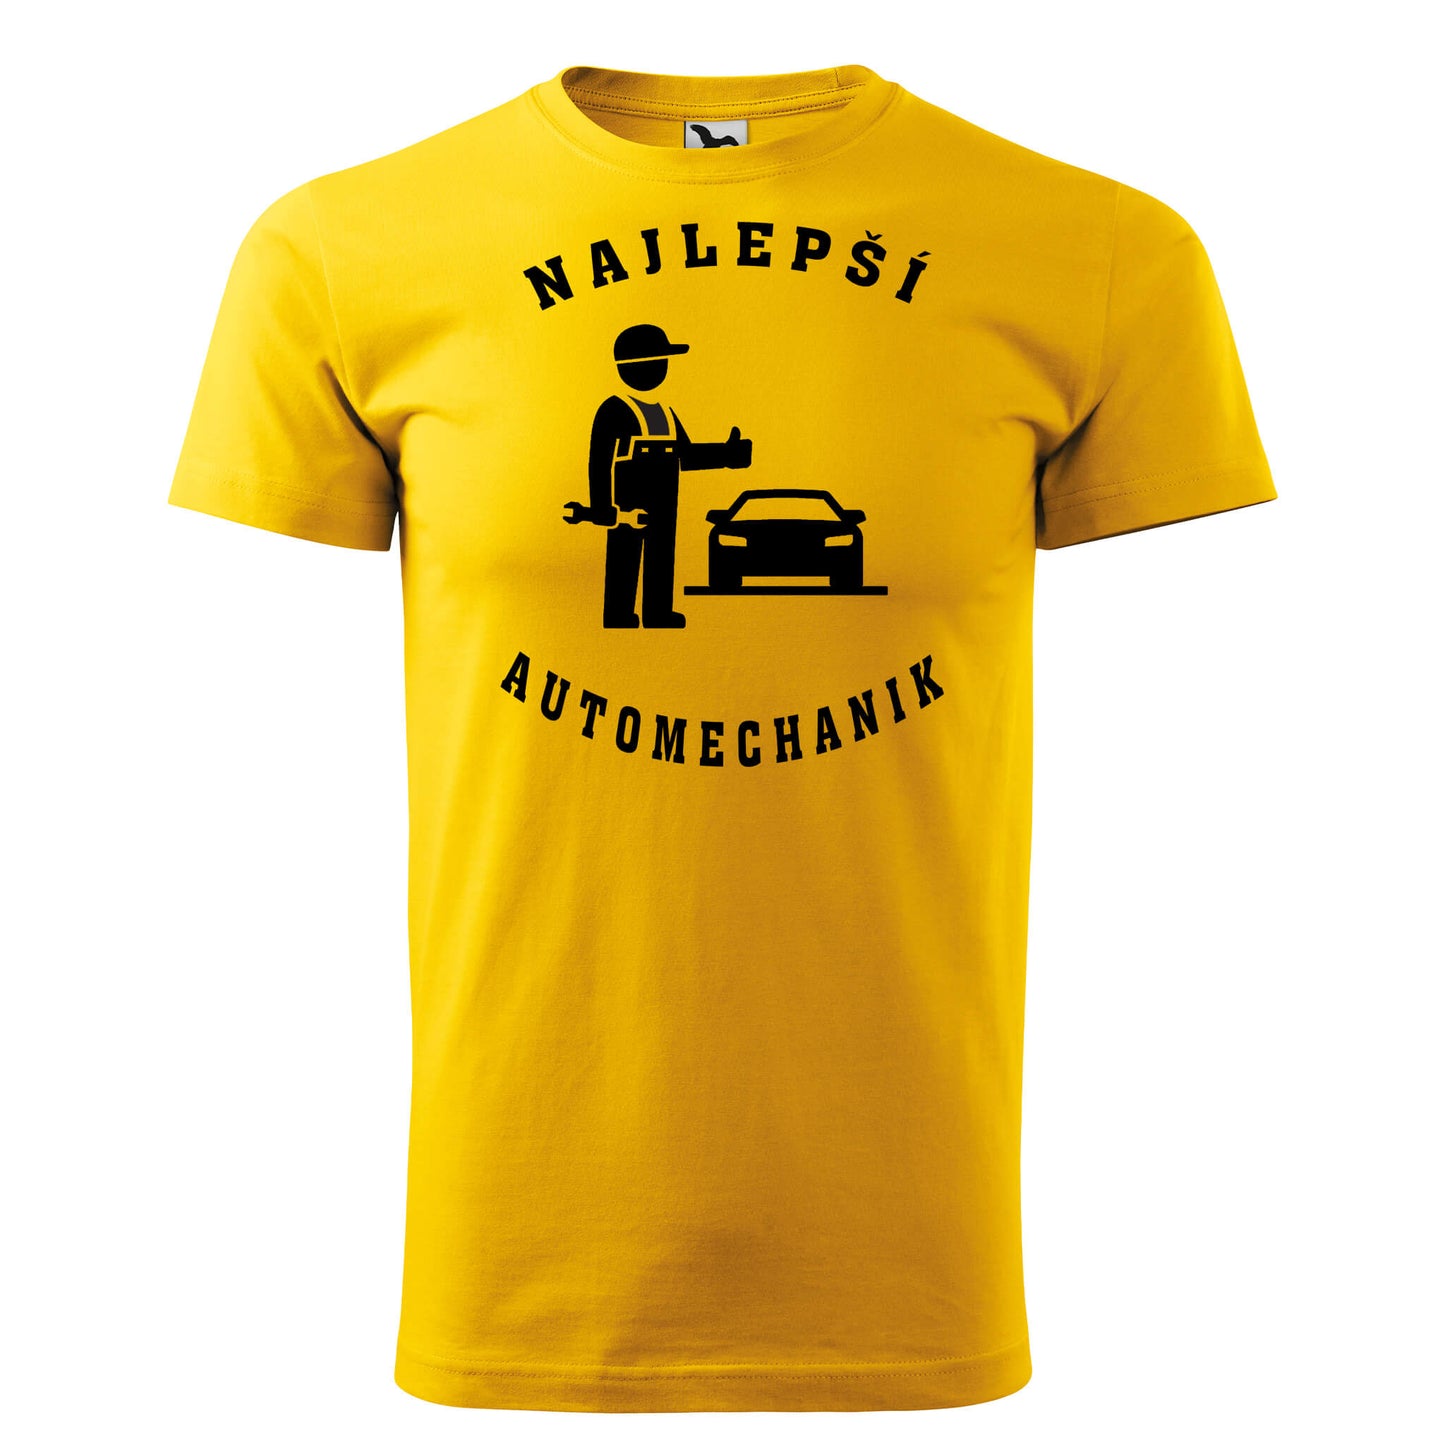 T-shirt - Najlepší automechanik - rvdesignprint